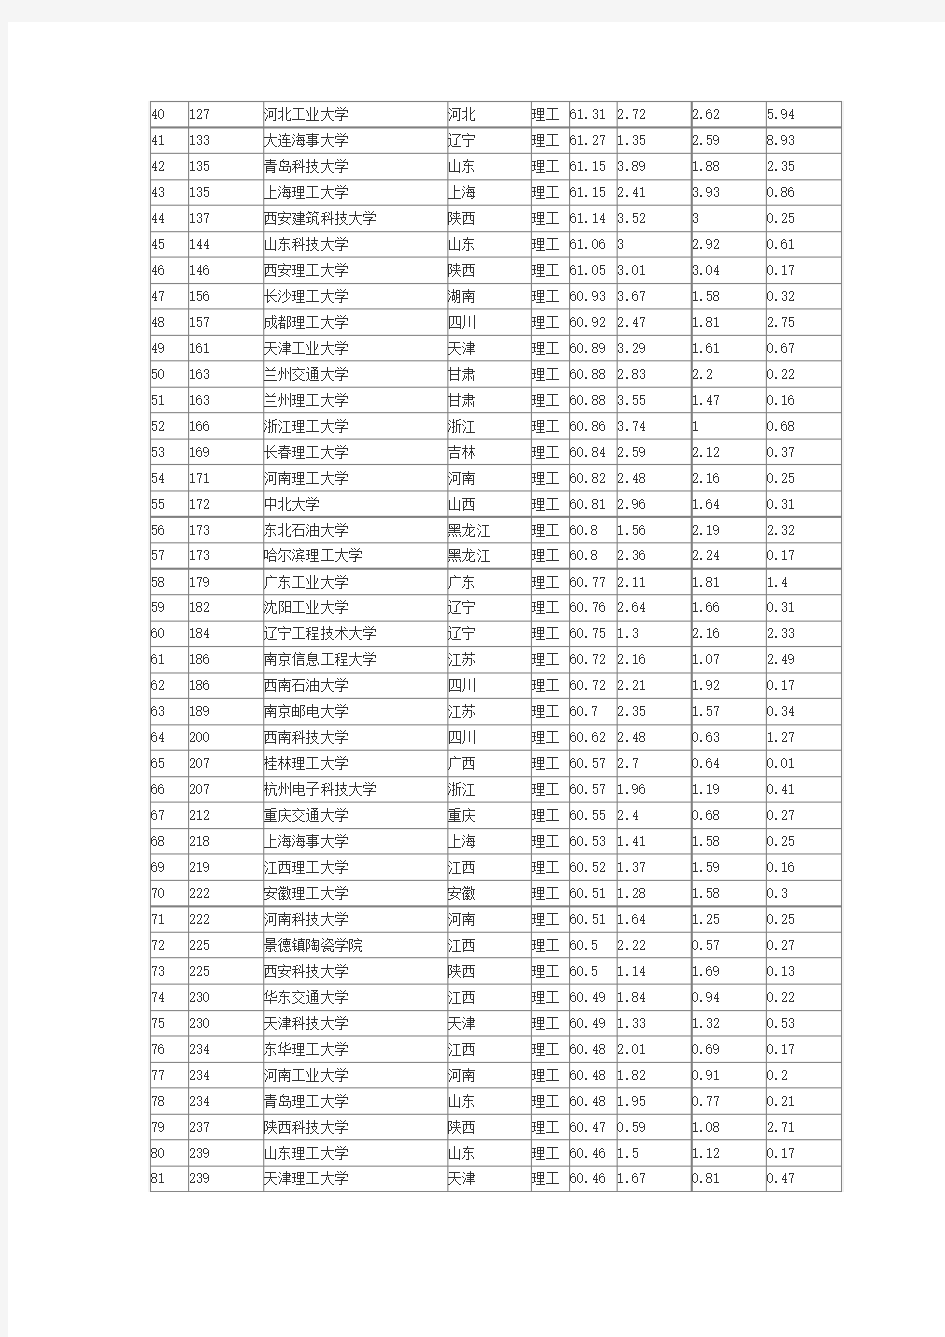 2013年中国理工类大学排名